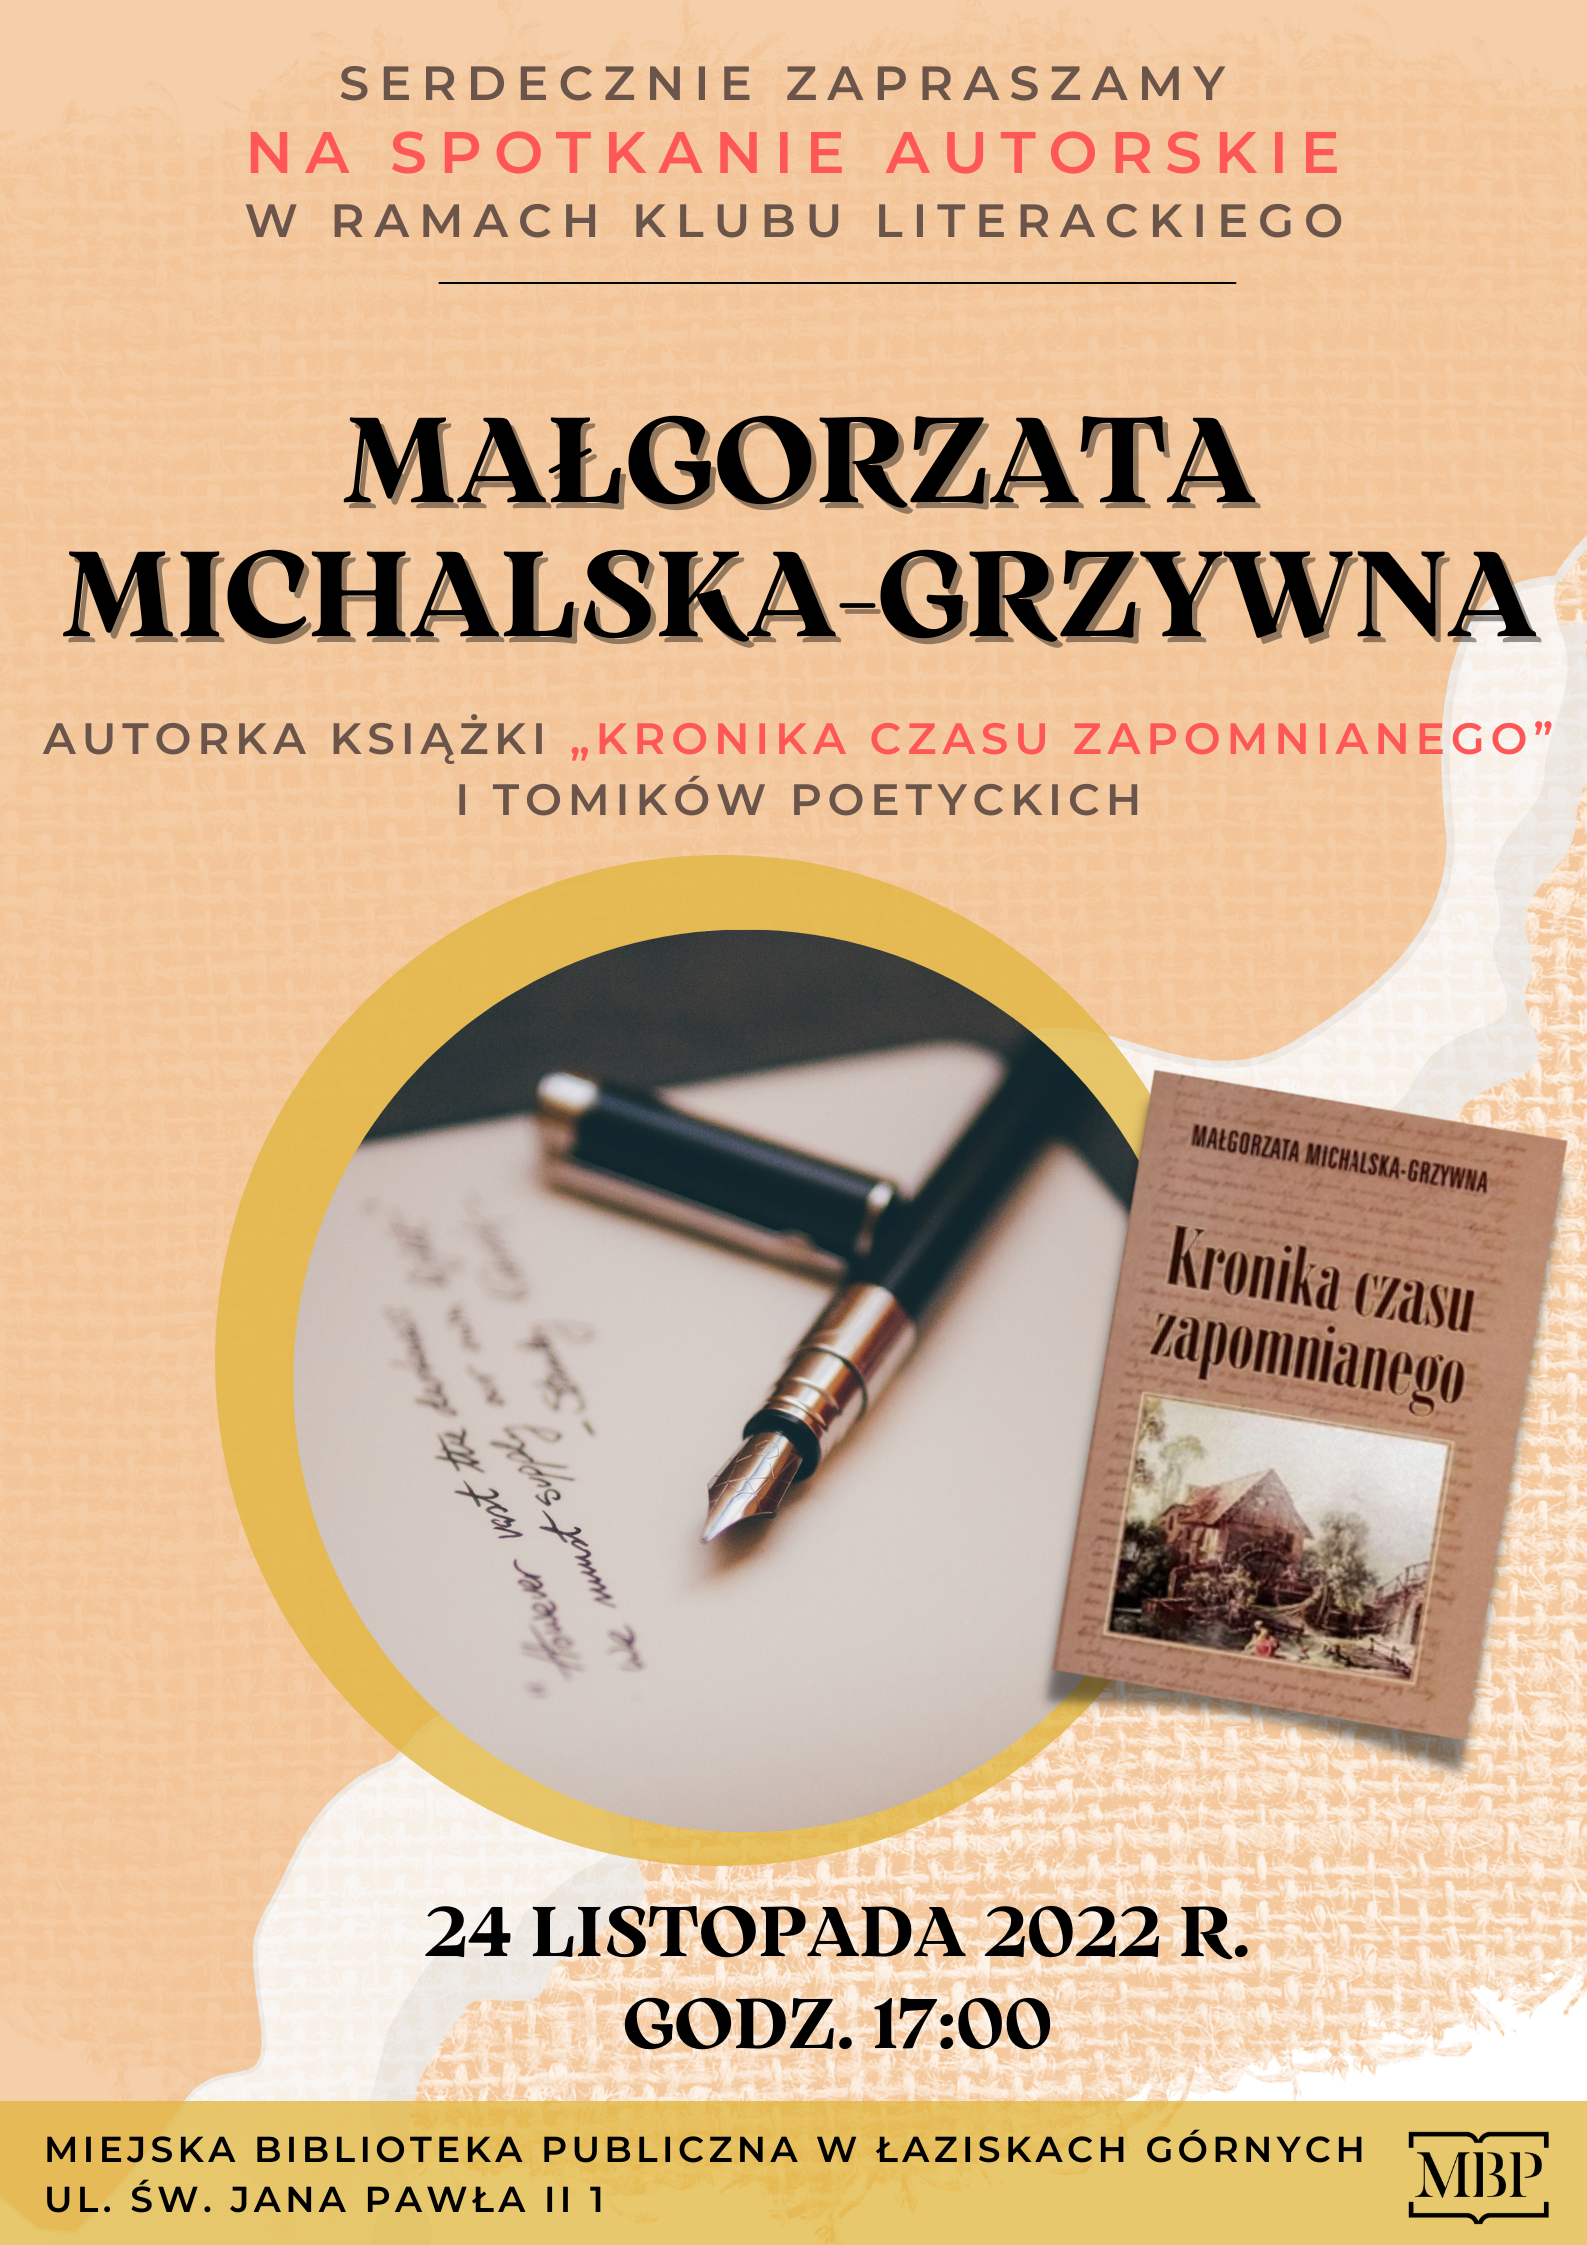 Plakat spotkania autorskiego z Małgorzatą Michalską-Grzywna